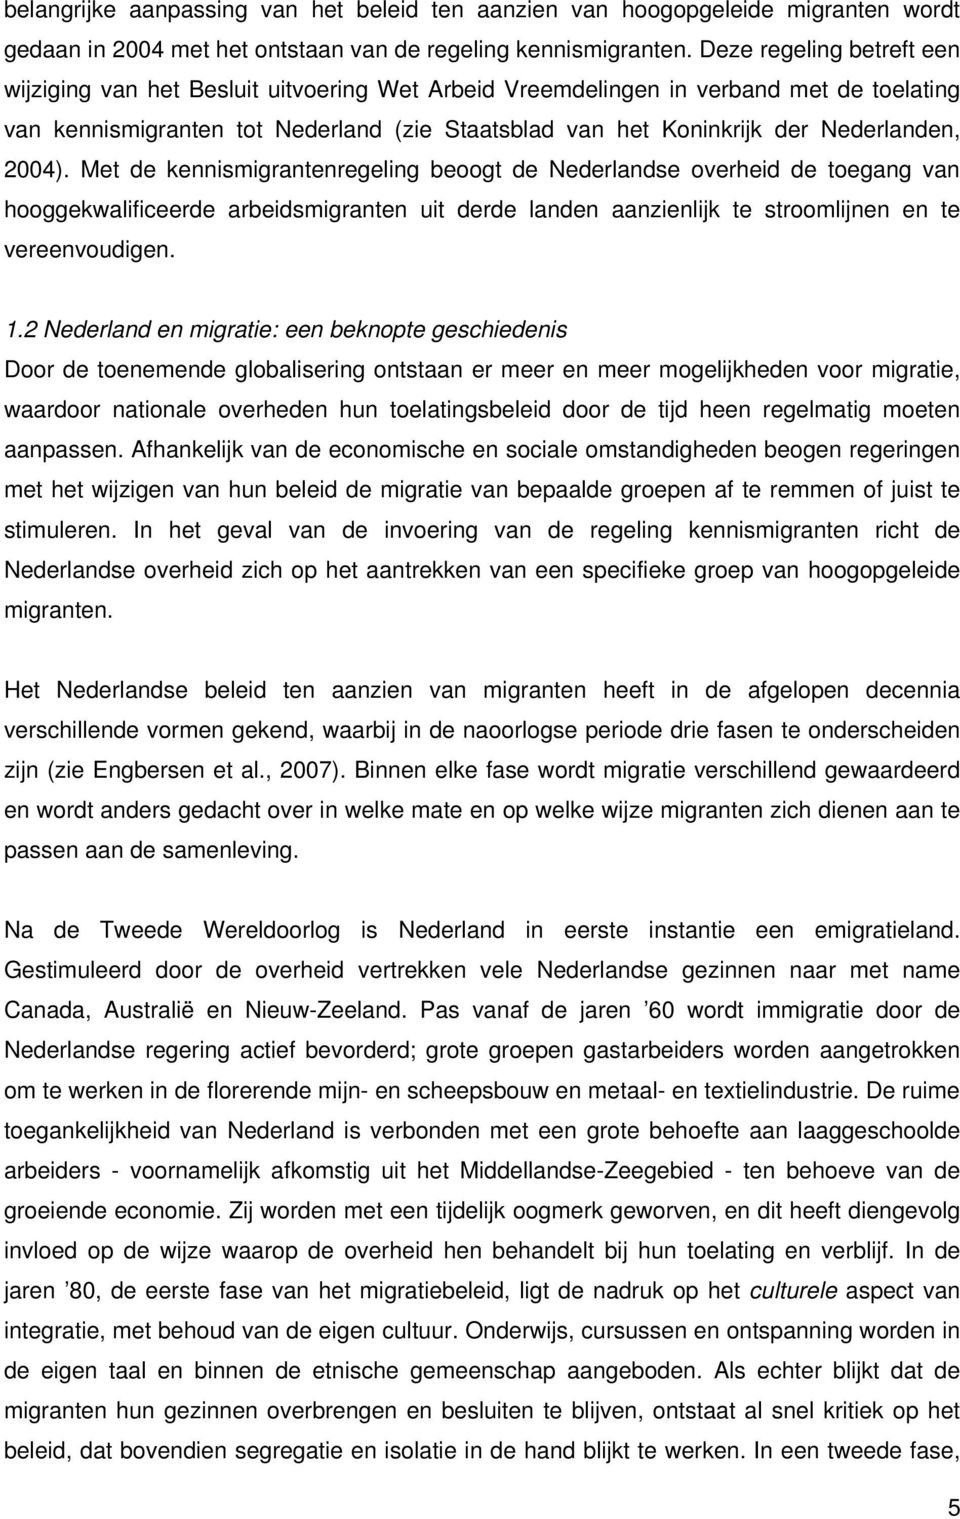 Nederlanden, 2004). Met de kennismigrantenregeling beoogt de Nederlandse overheid de toegang van hooggekwalificeerde arbeidsmigranten uit derde landen aanzienlijk te stroomlijnen en te vereenvoudigen.